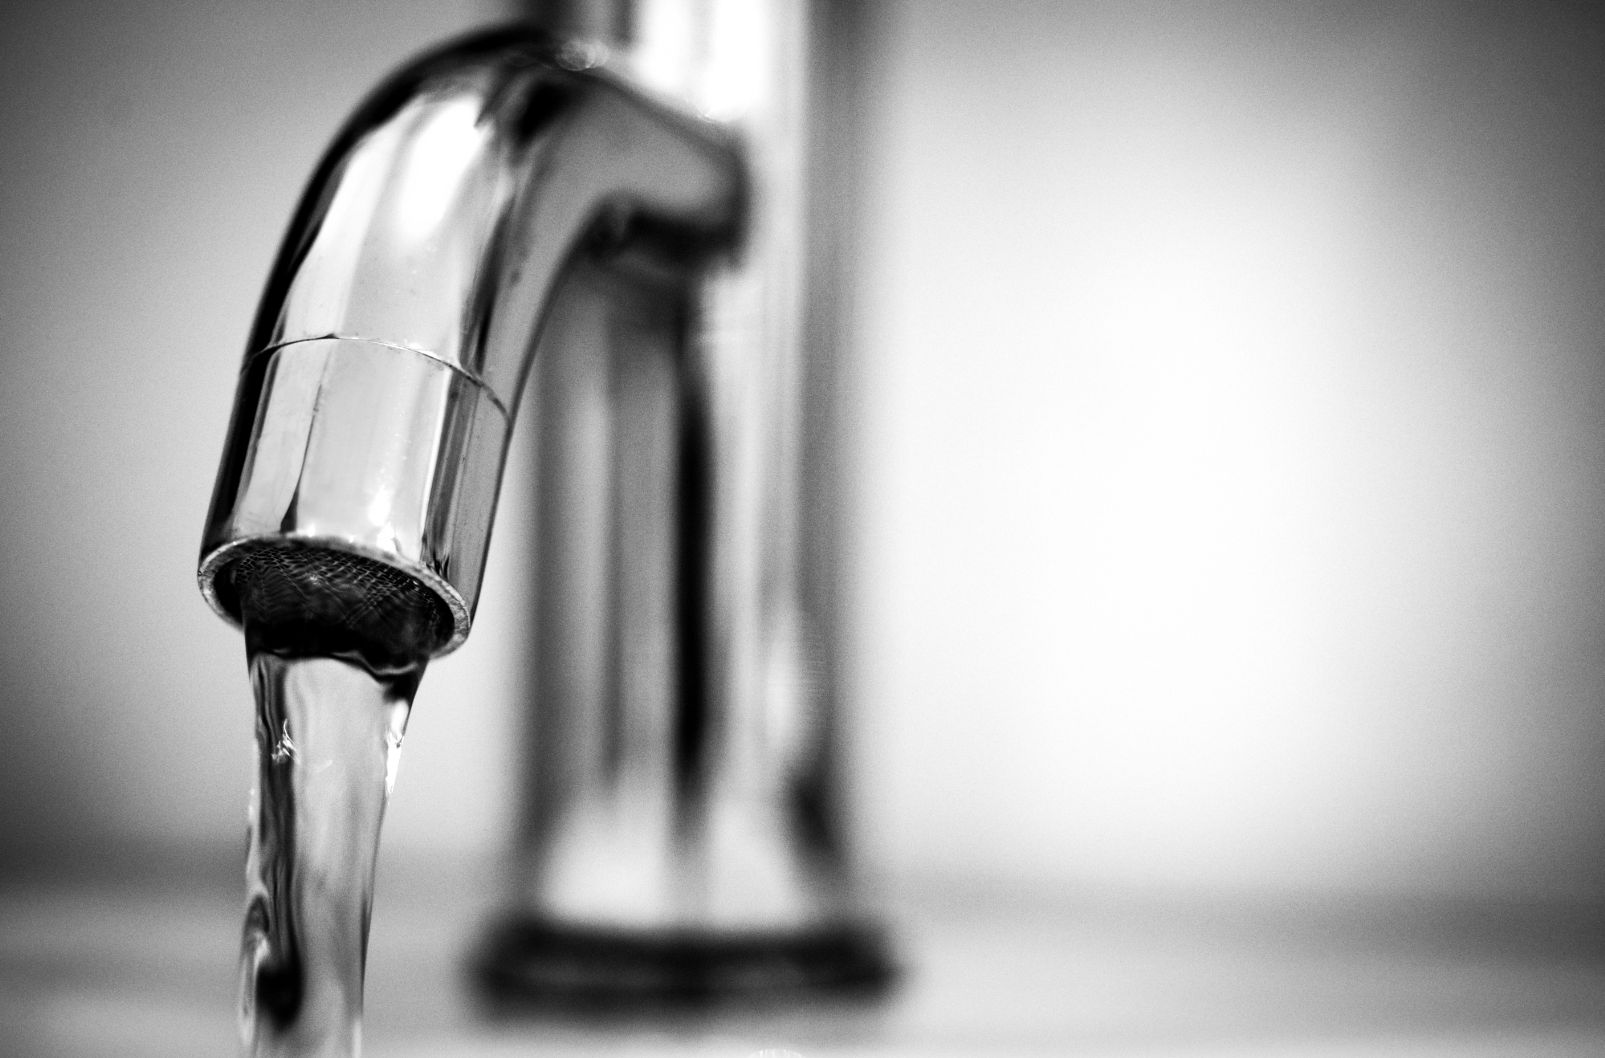 Município de Aljezur informa sobre possíveis irregularidades no abastecimento de água